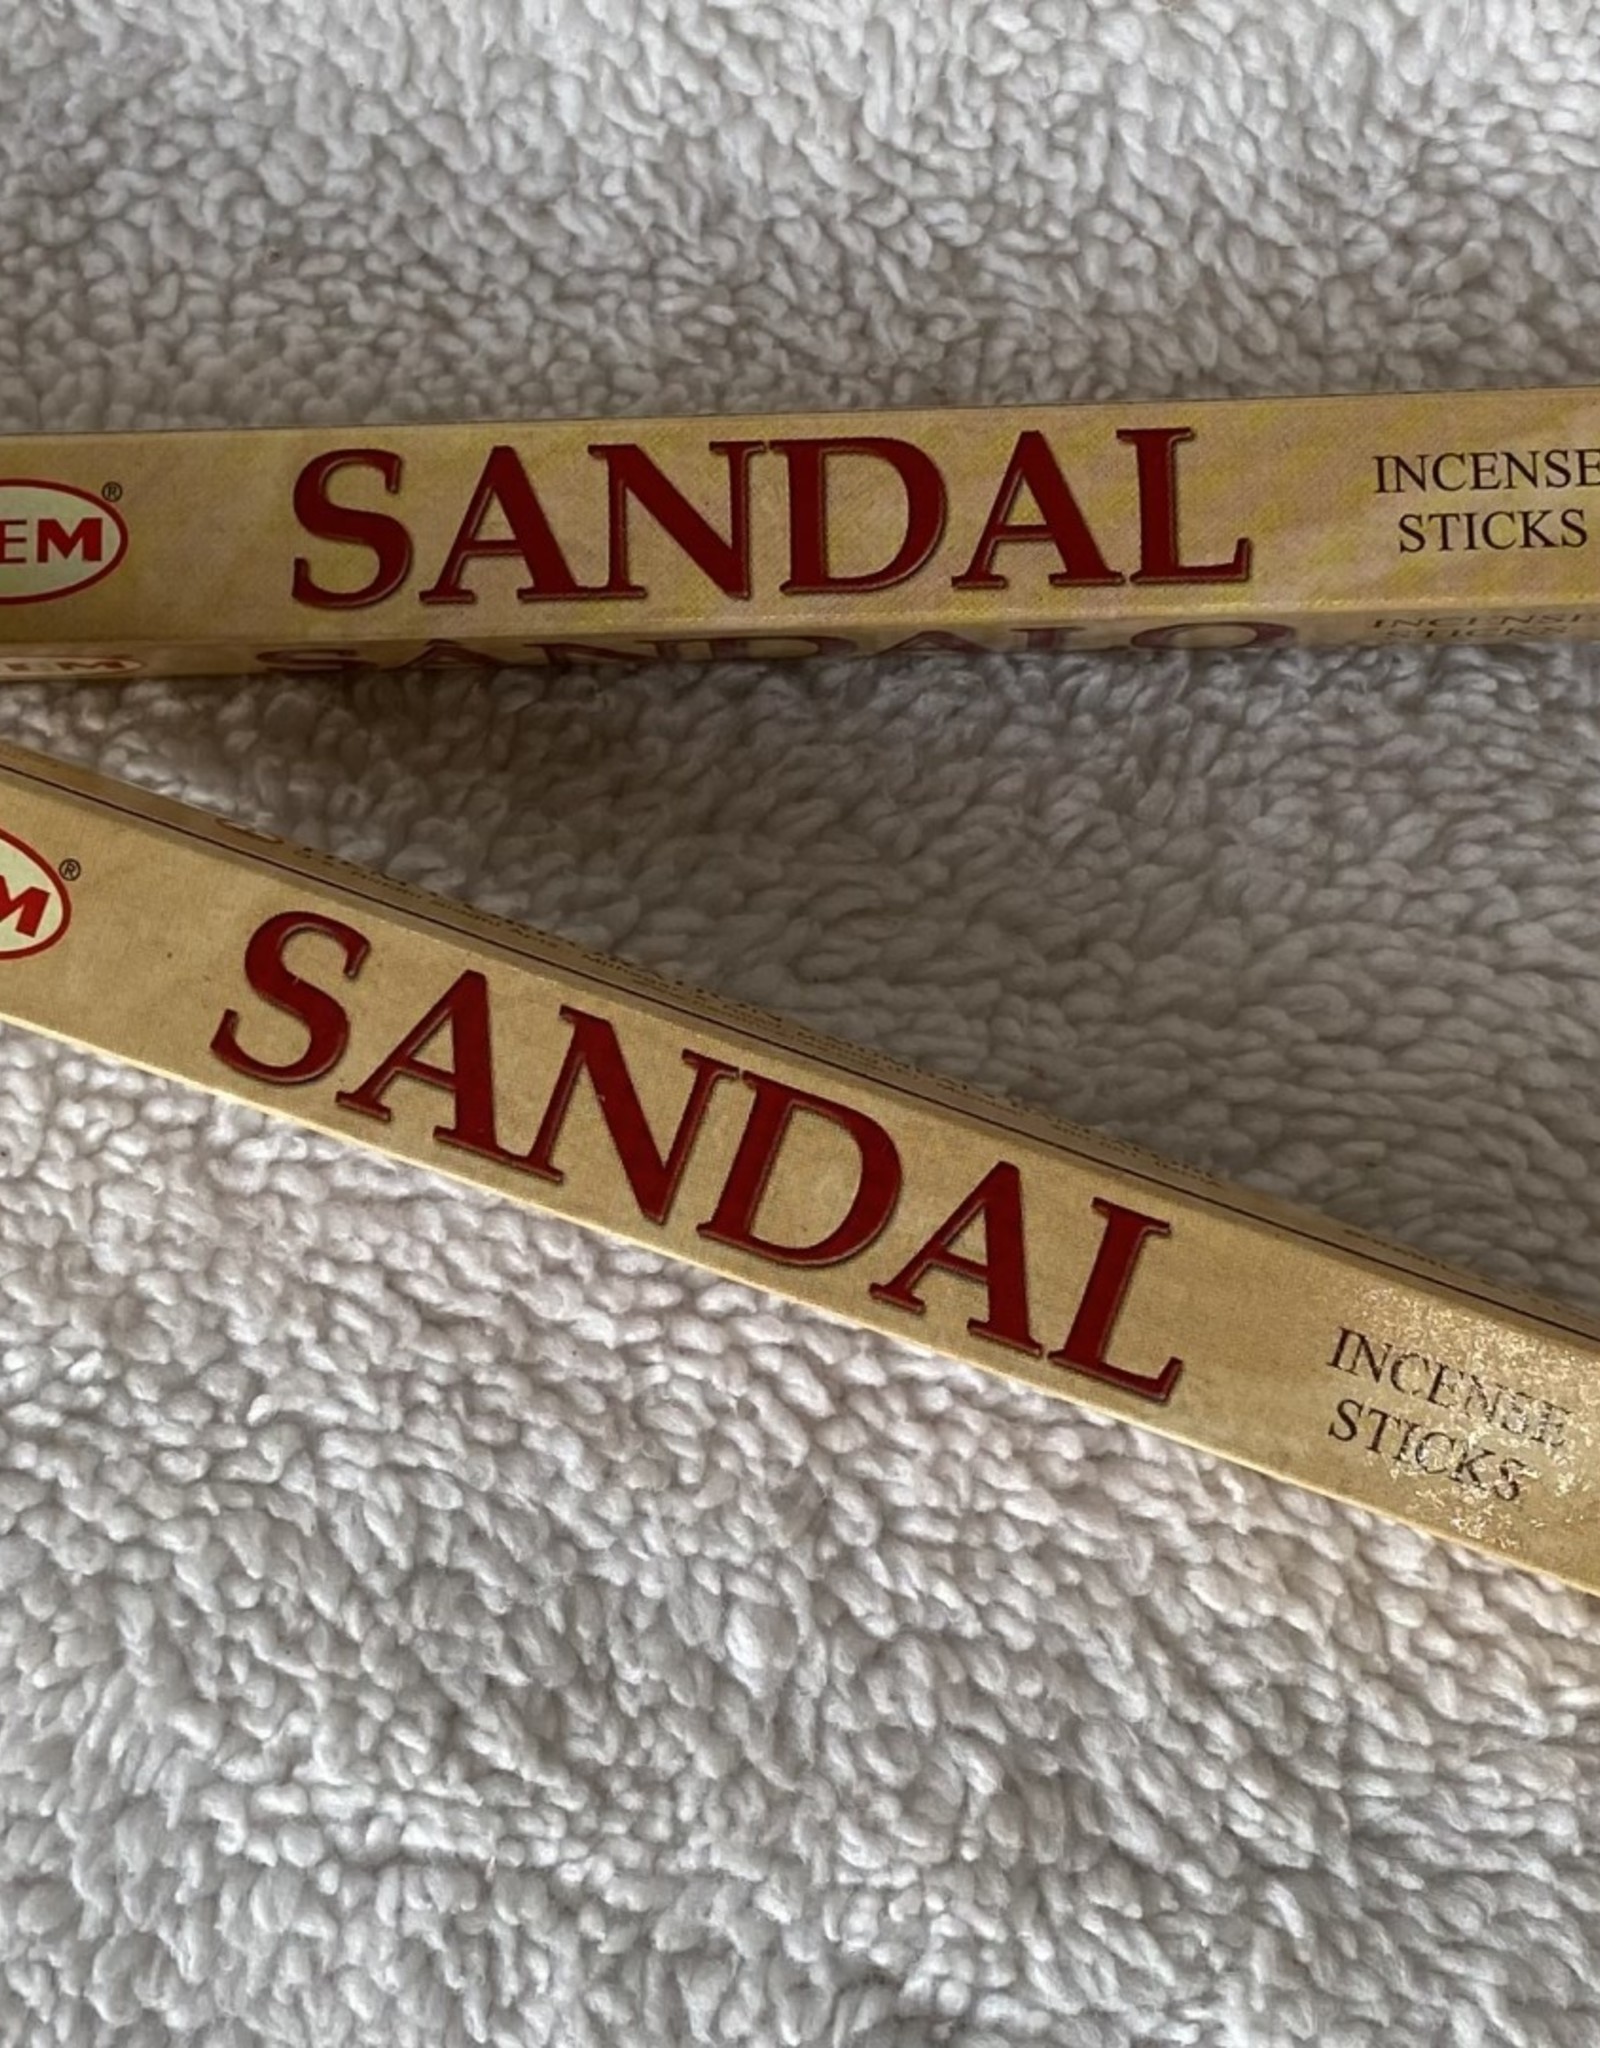 Hem Sandal Incense